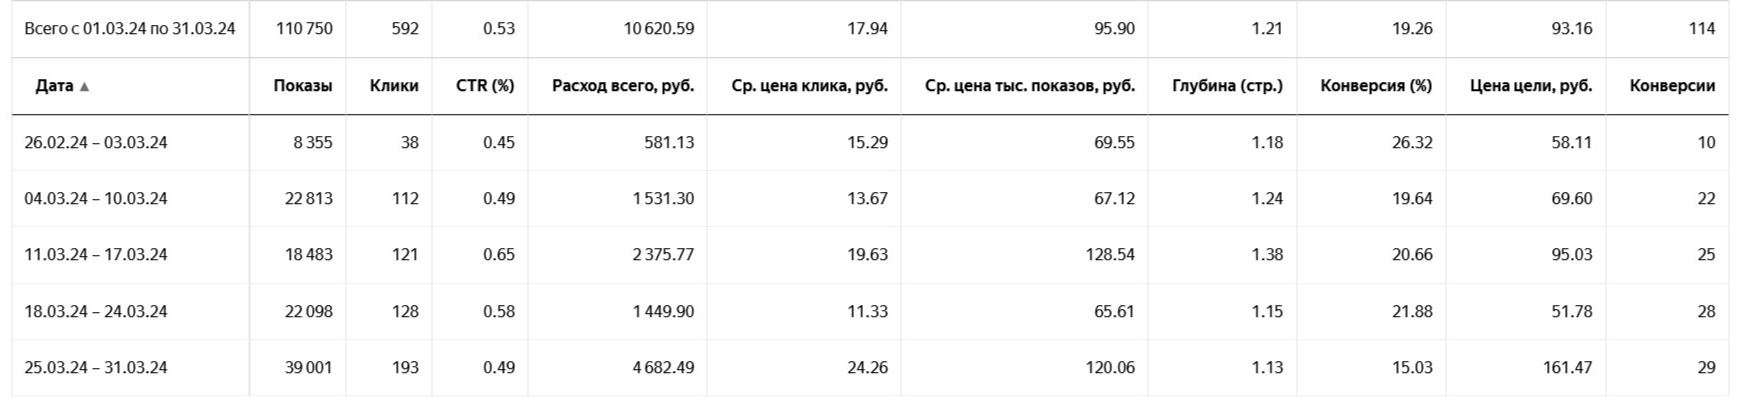 Клининговые услуги. 113 заявок по 93 рубля за месяц.